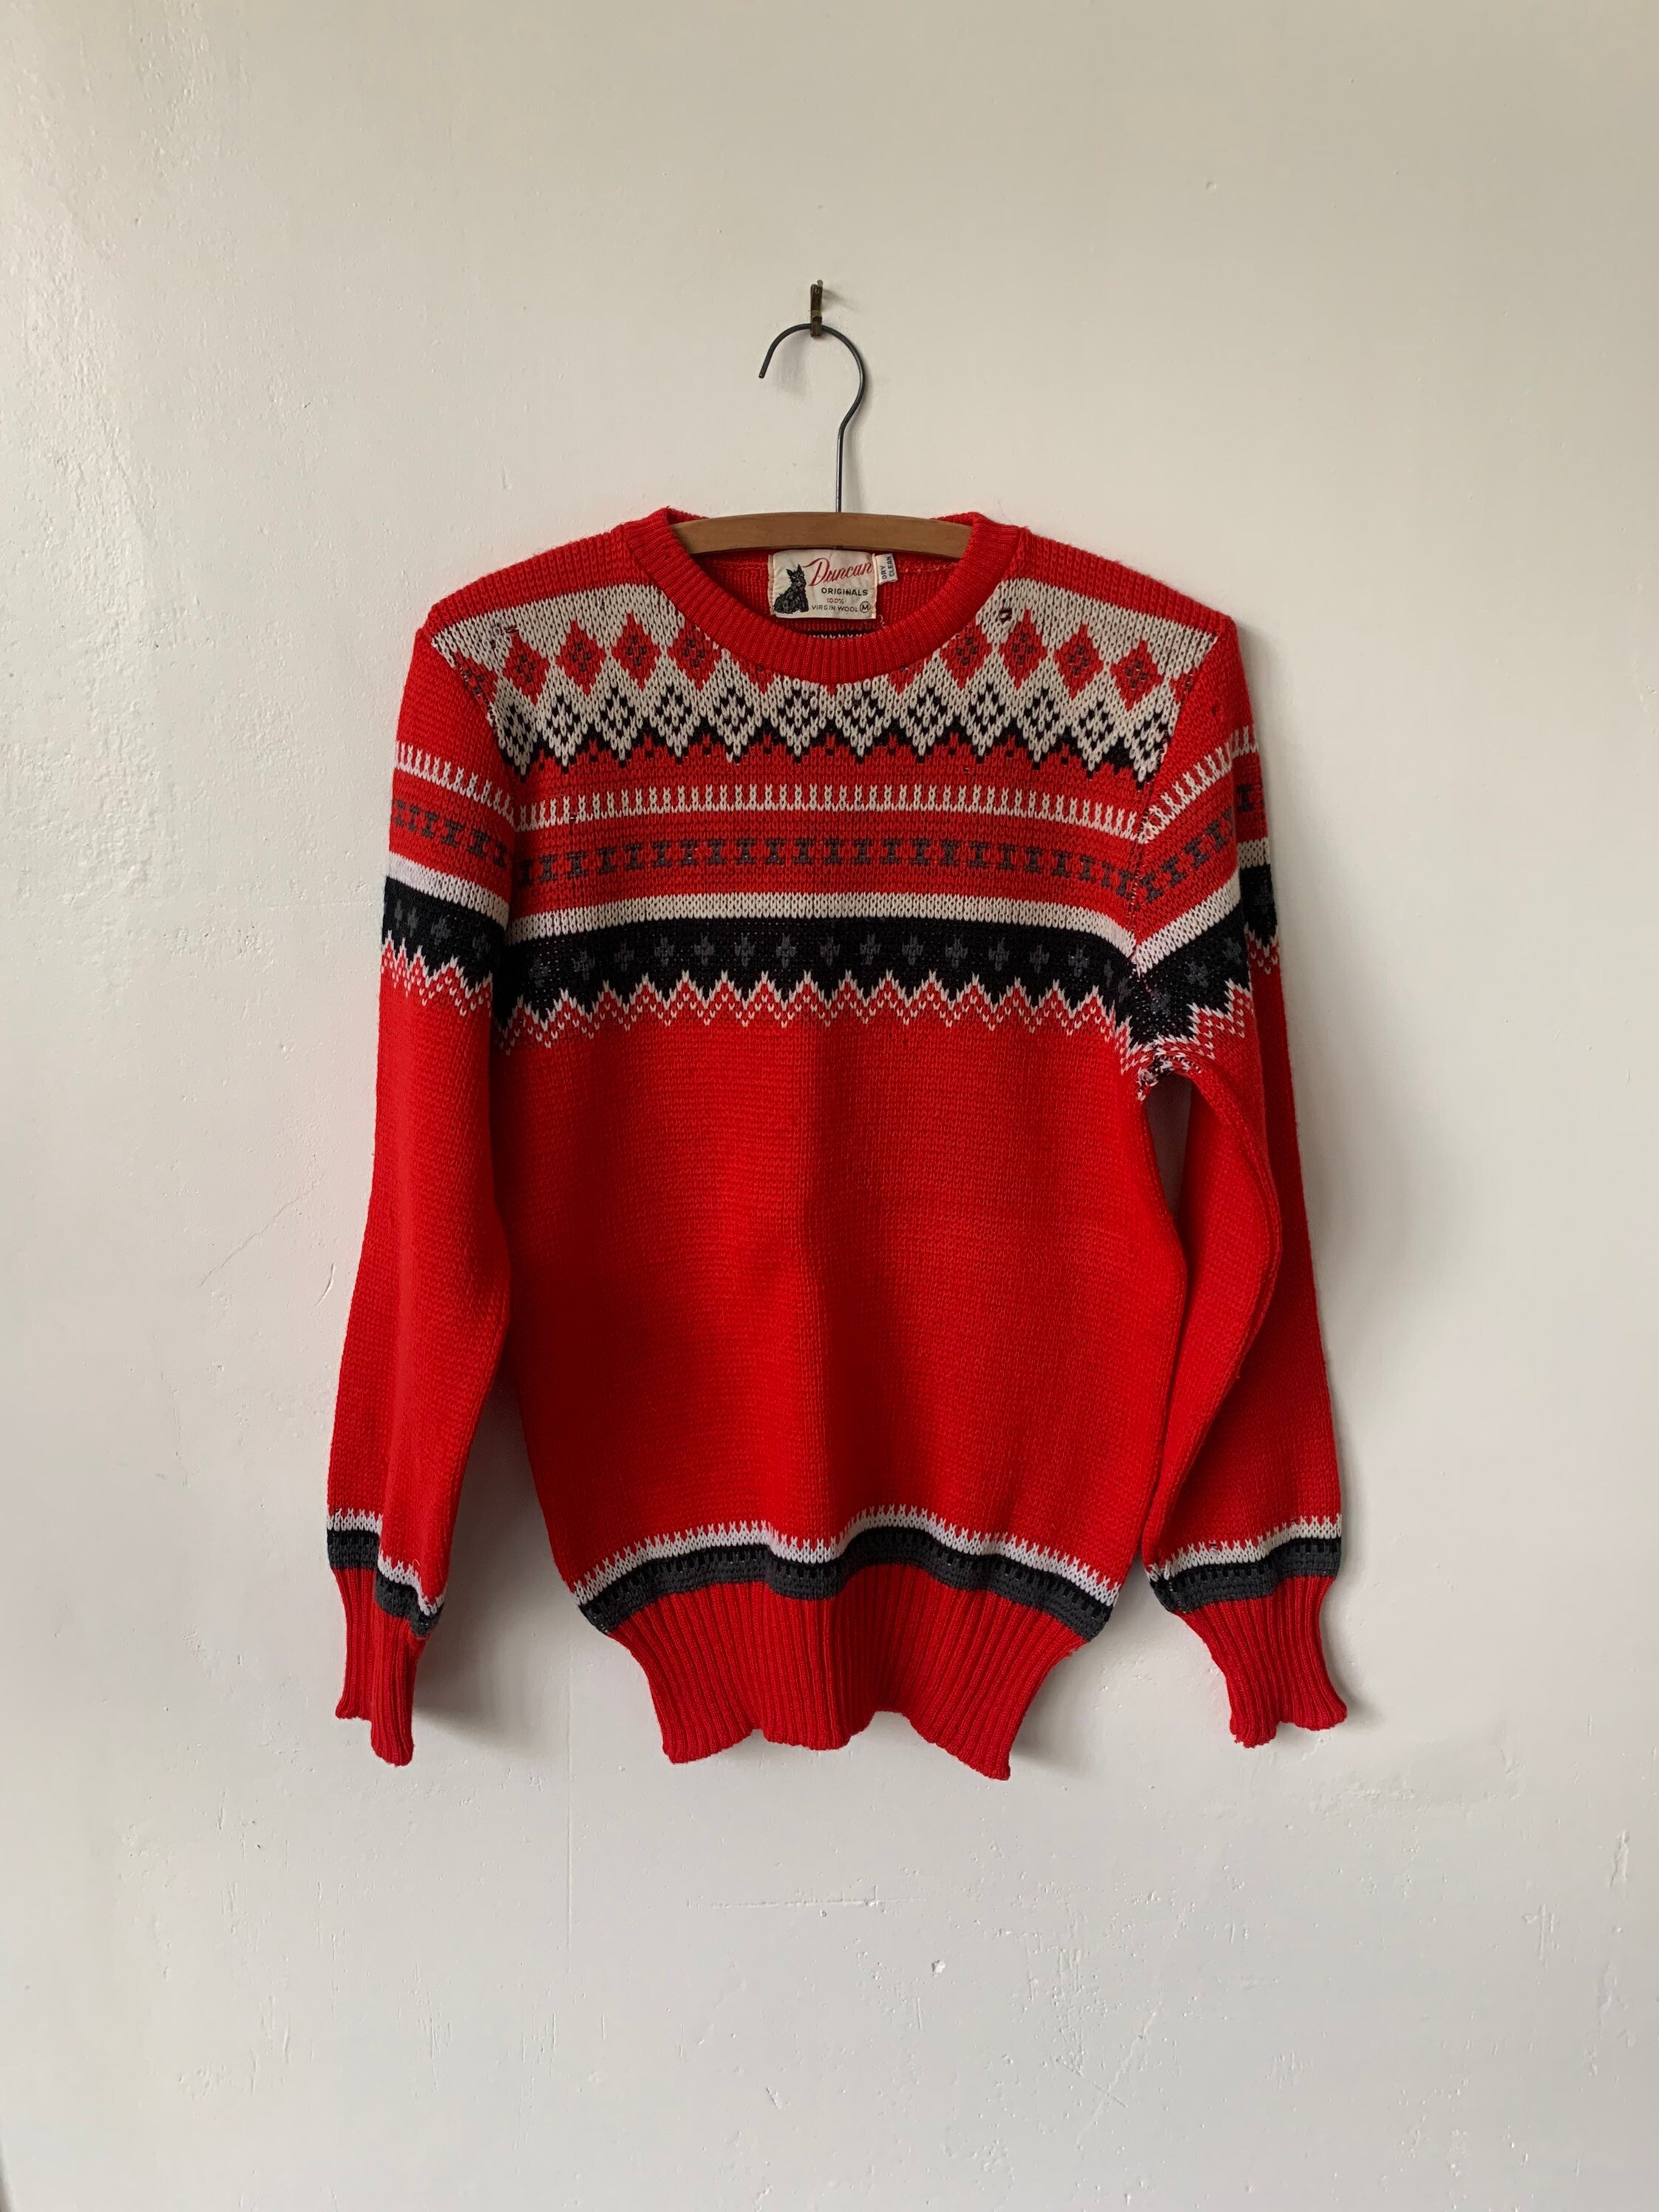 Vintage Fair Isle Wool Sweater 1940s Red Wool Sweater Vintage - Etsy